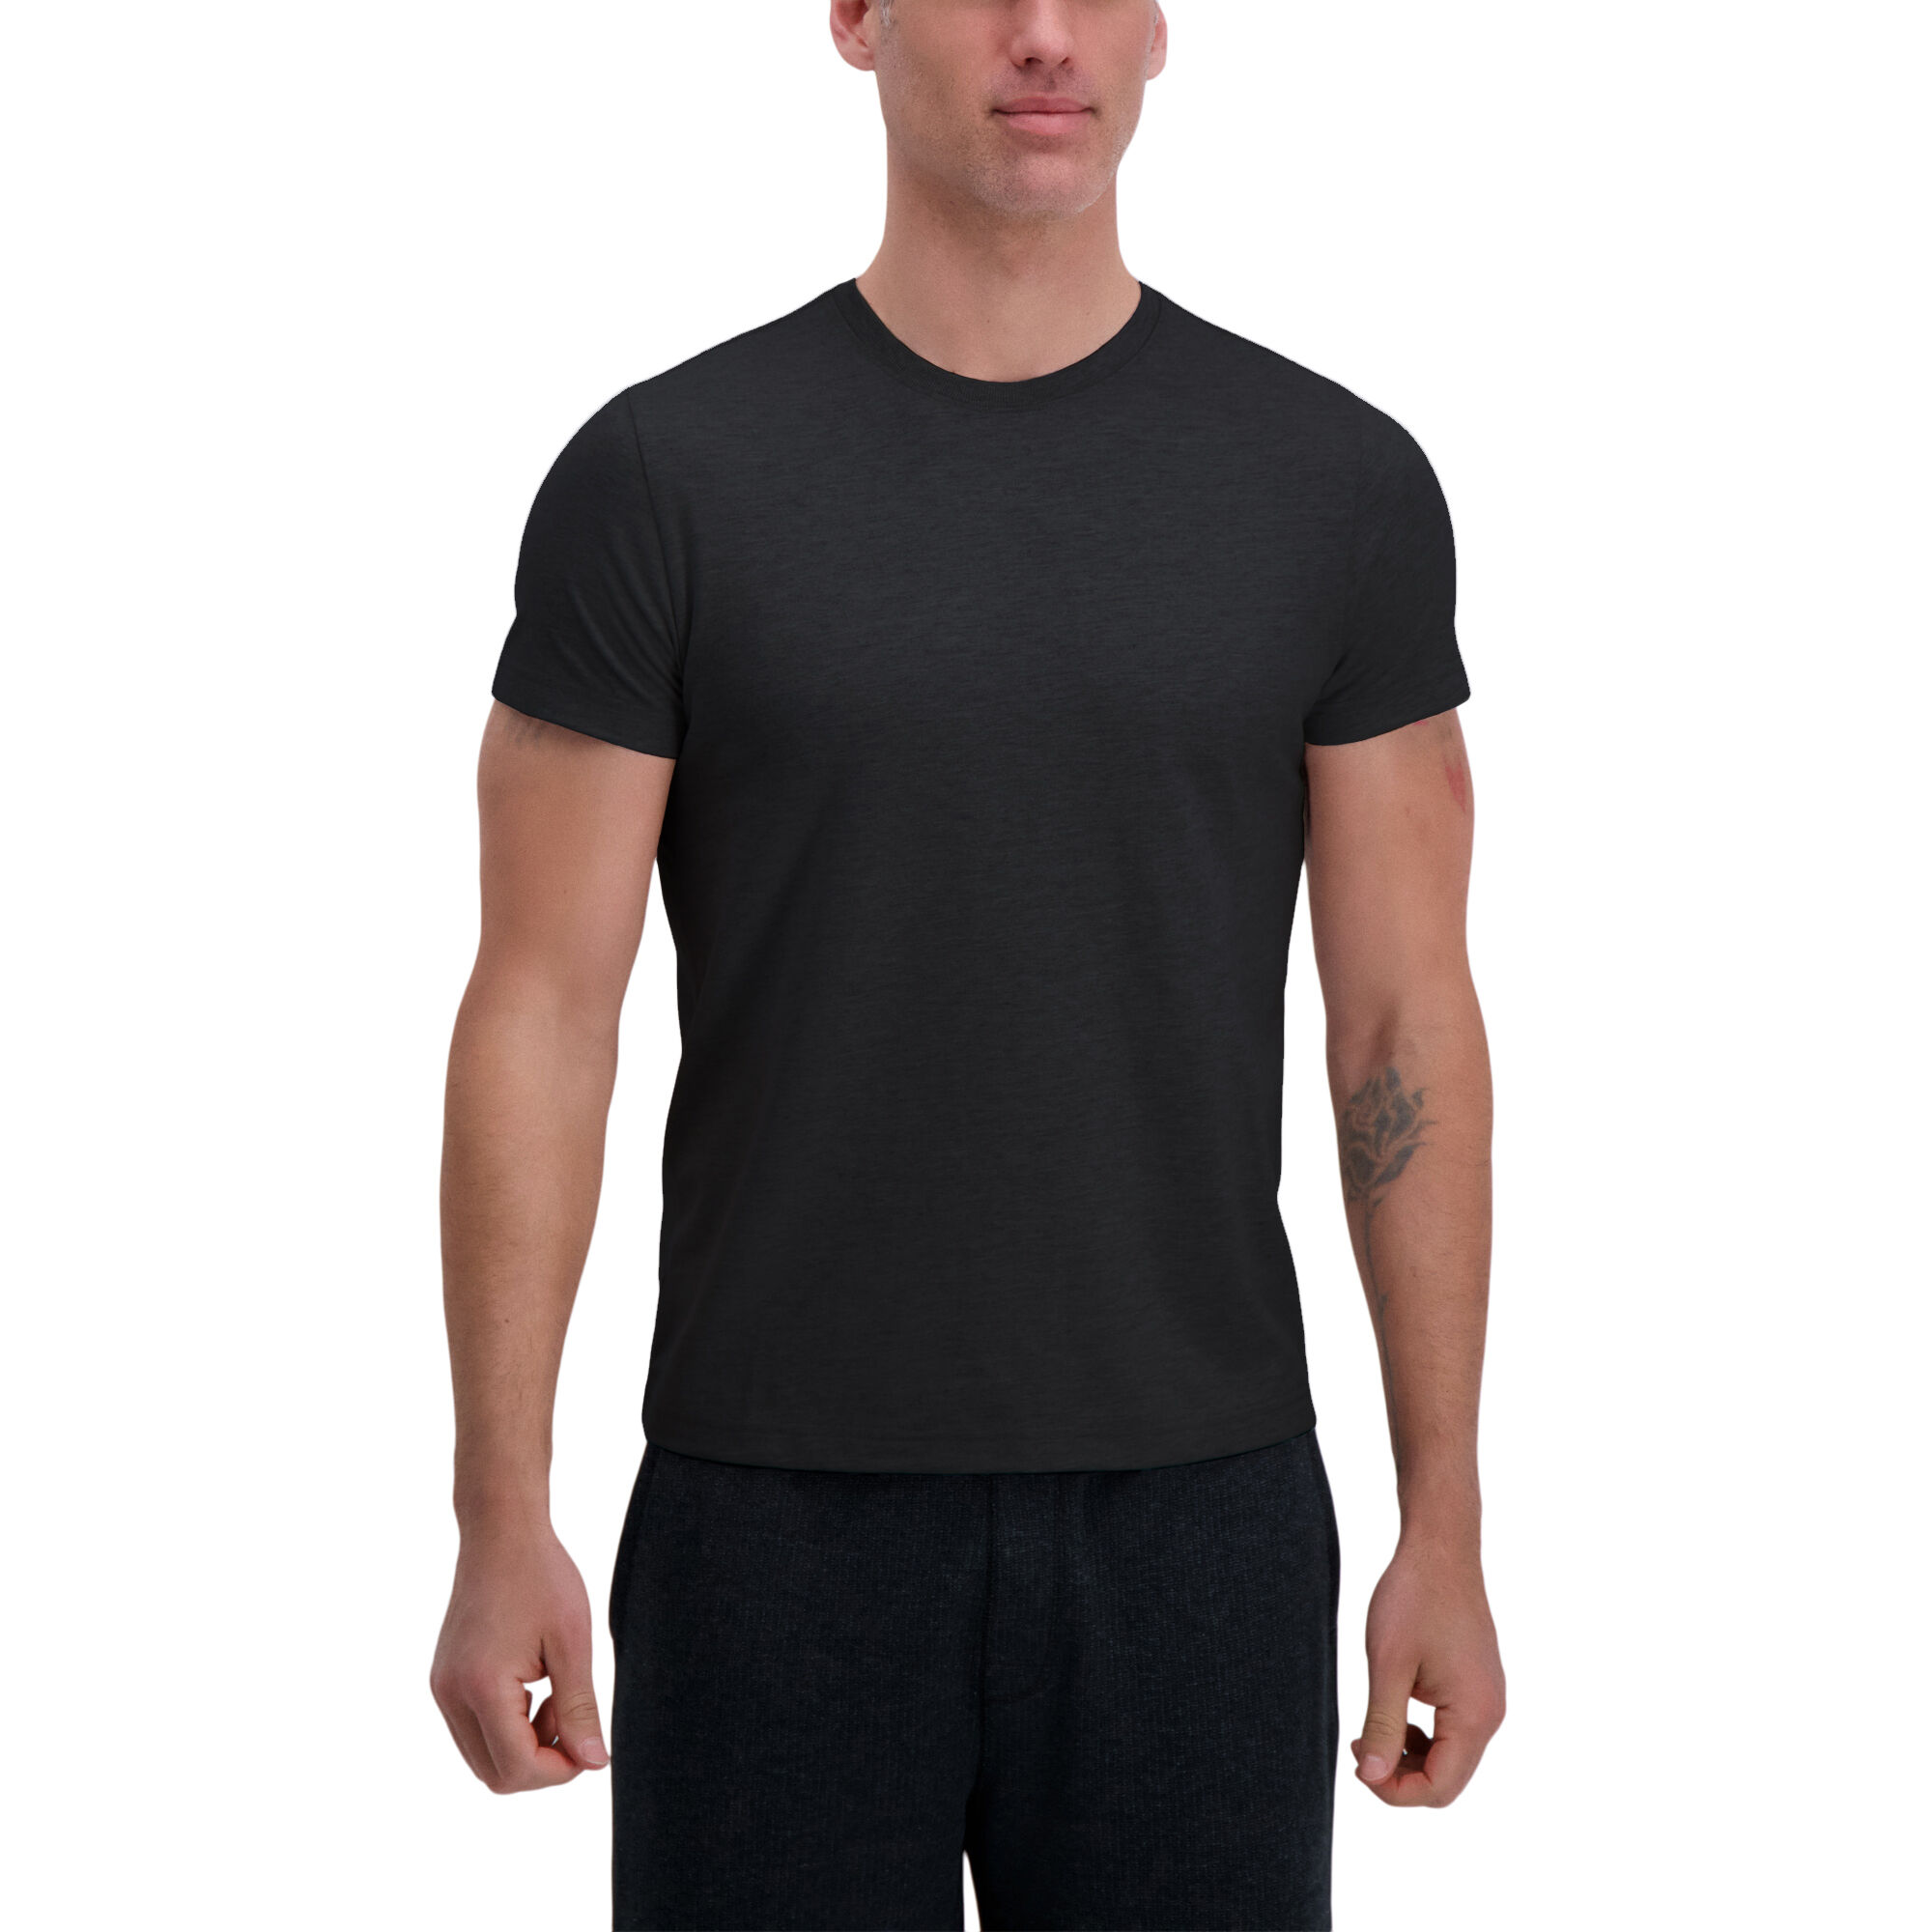 Haggar Heavyweight Short Sleeve Crewneck Tee Black (UE70001 Clothing Shirts & Tops) photo